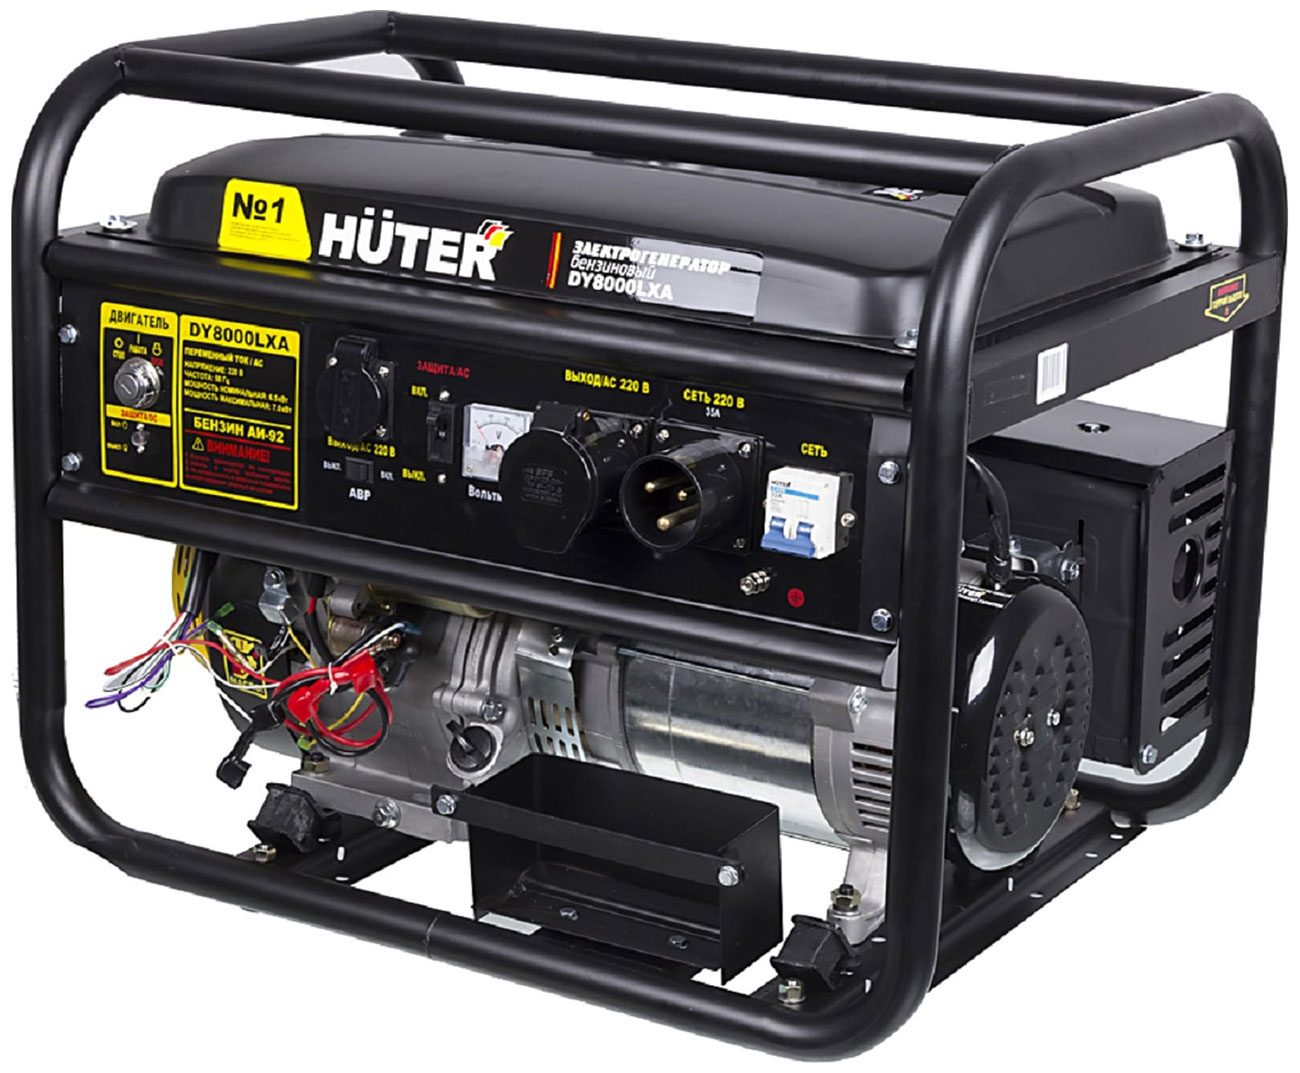 электрический генератор и электростанция huter dy5000l Электрический генератор и электростанция Huter DY8000LXA